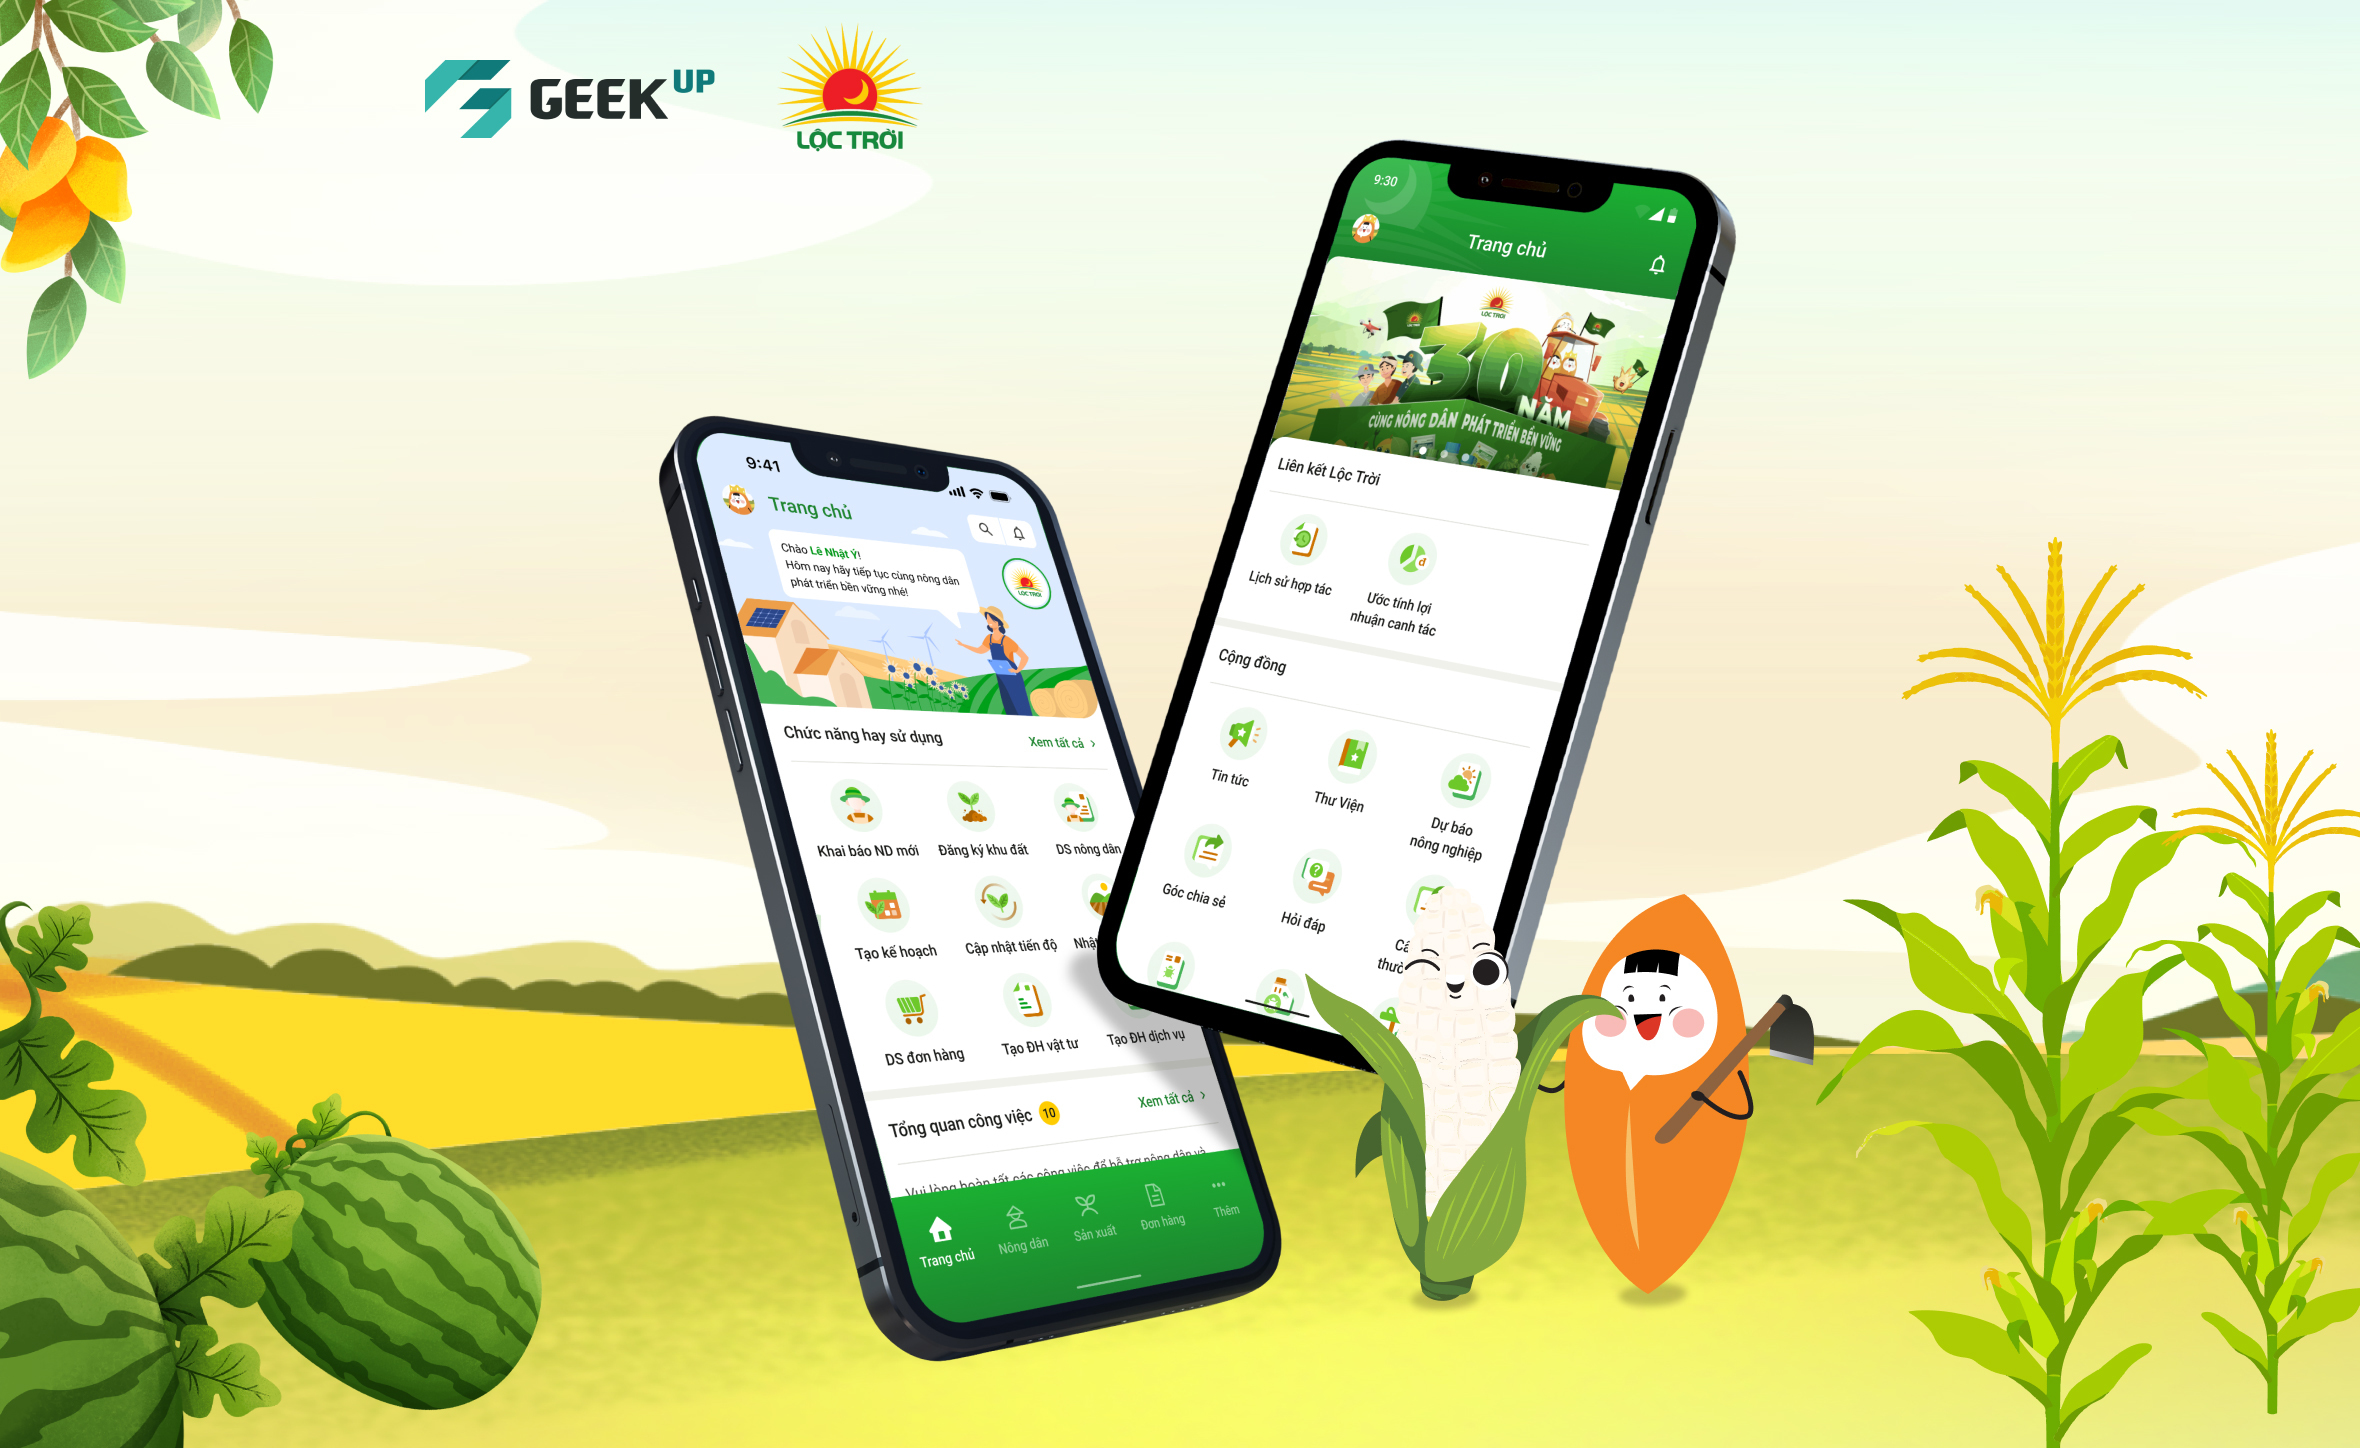 Tiên phong quản lý liên kết sản xuất nông nghiệp trên nền tảng mobile tại Việt Nam